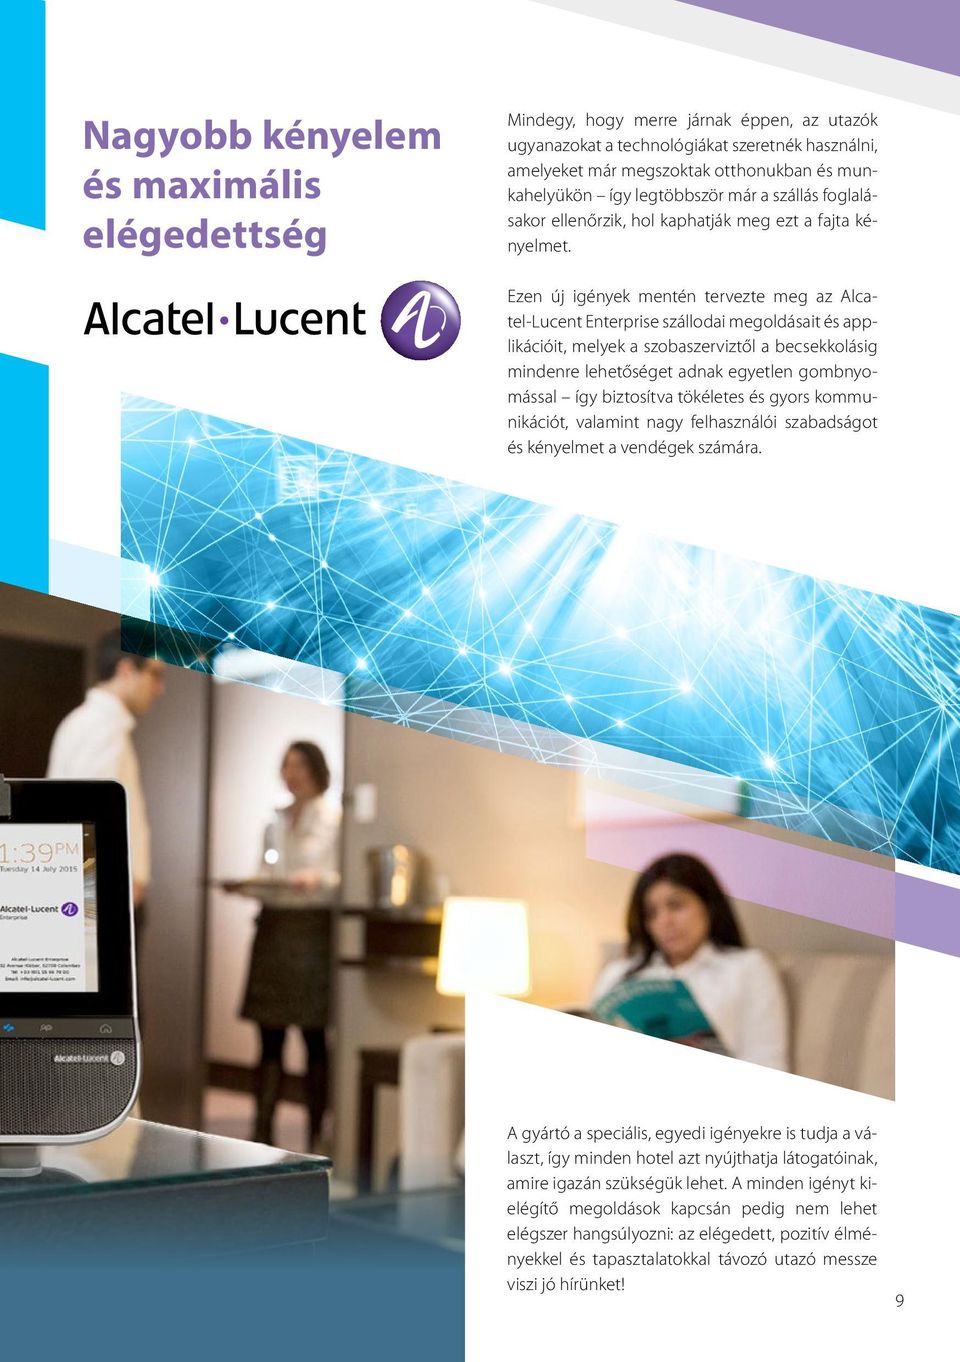 Ezen új igények mentén tervezte meg az Alcatel-Lucent Enterprise szállodai megoldásait és applikációit, melyek a szobaszerviztől a becsekkolásig mindenre lehetőséget adnak egyetlen gombnyomással így